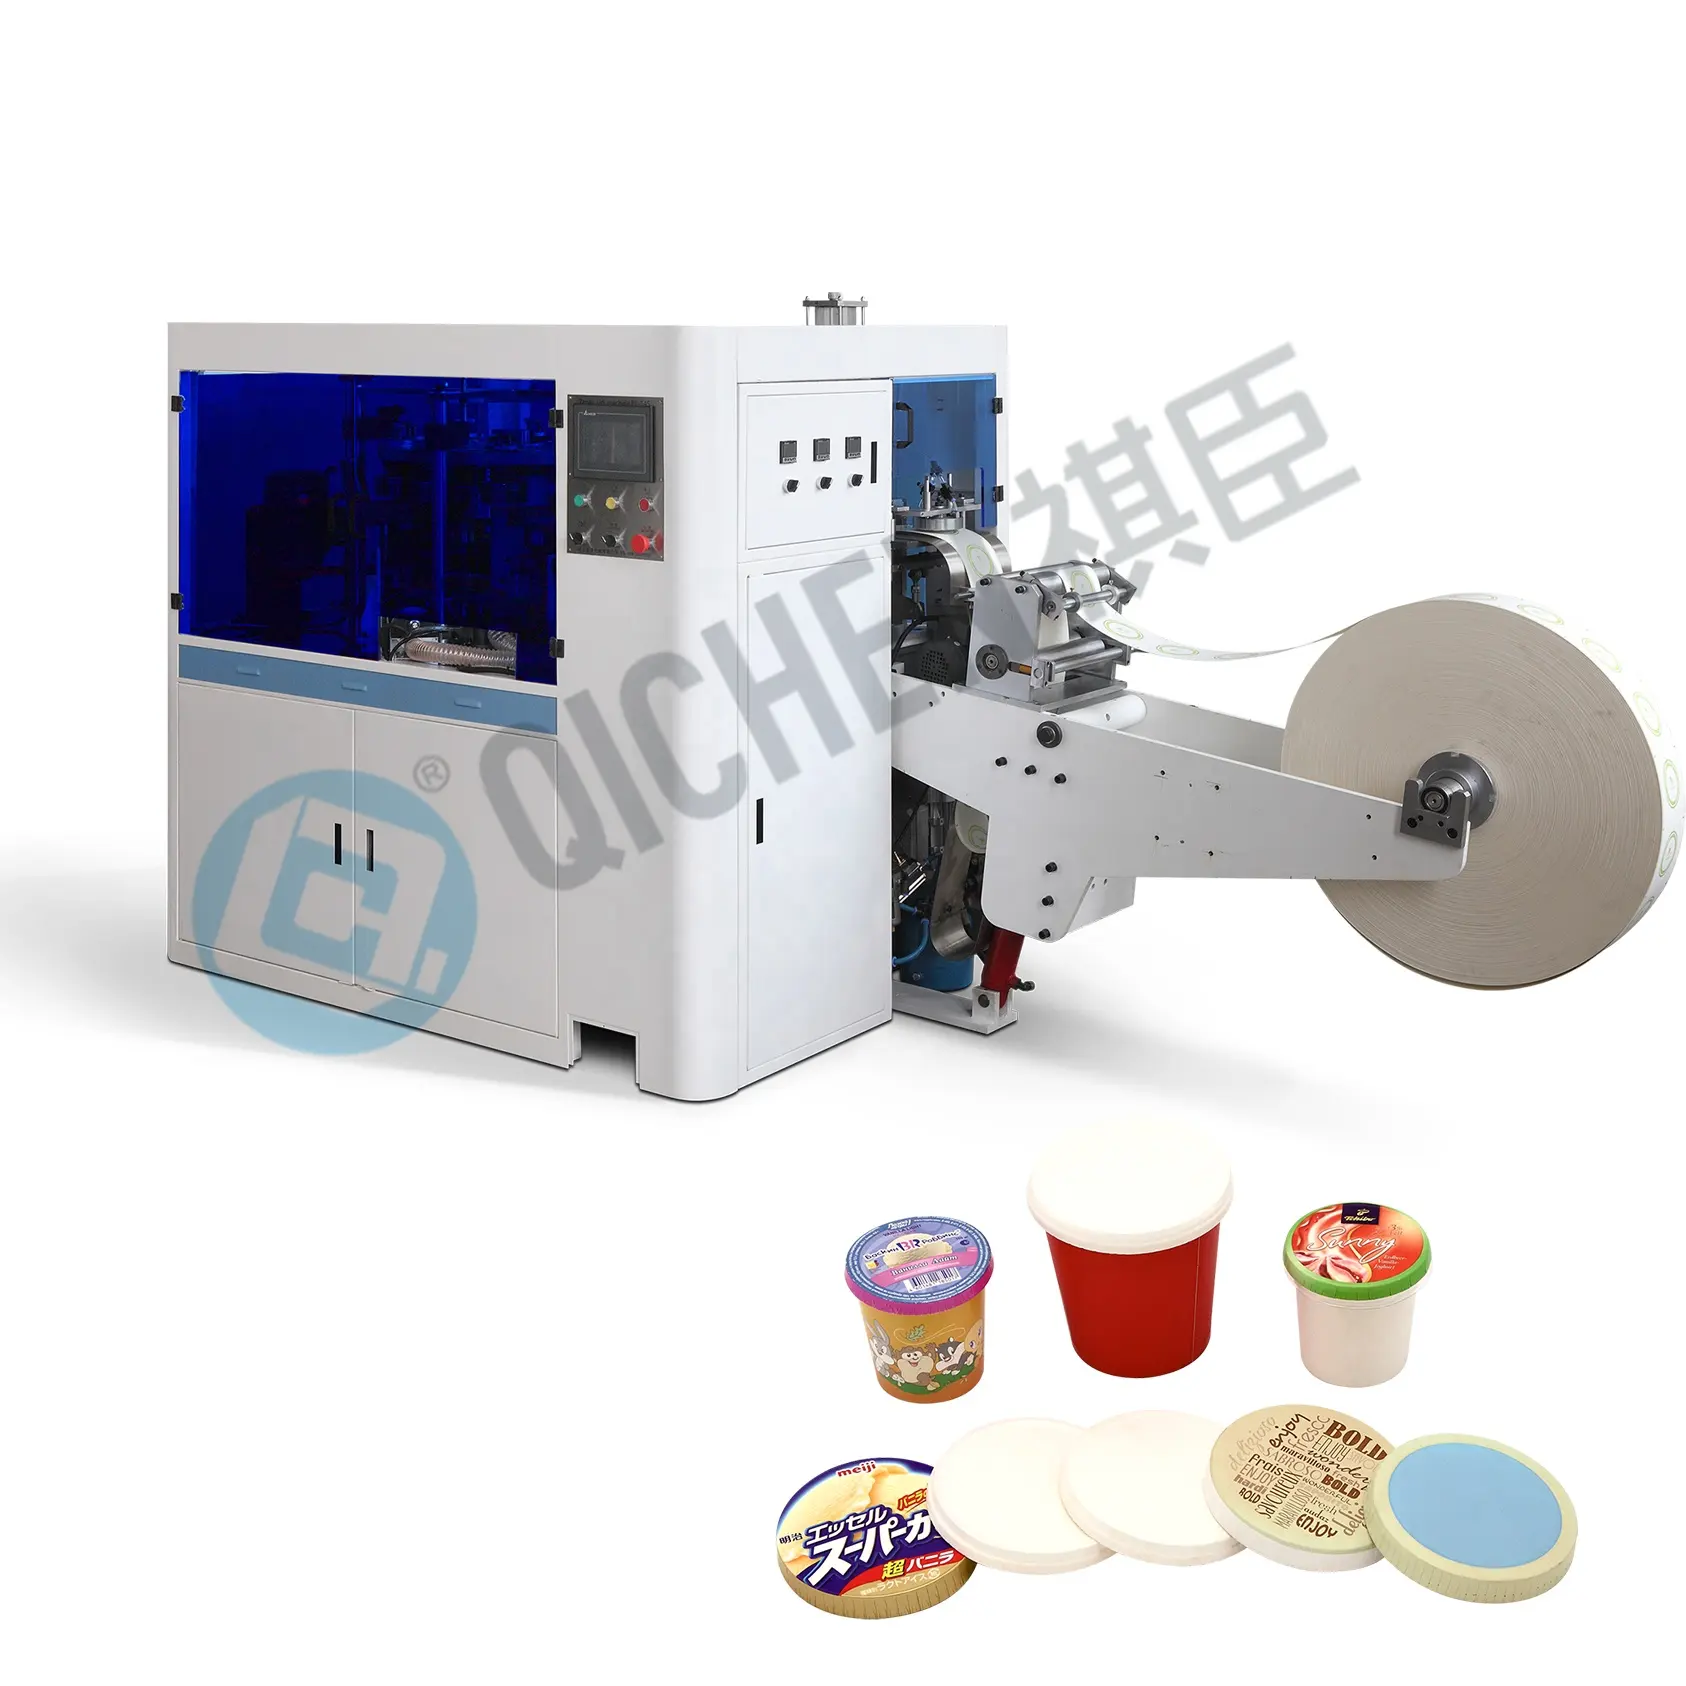 QICHEN 자동 좋은 품질 커피 종이 컵 뚜껑 제조 기계 중소 기업 아이디어 PL-145